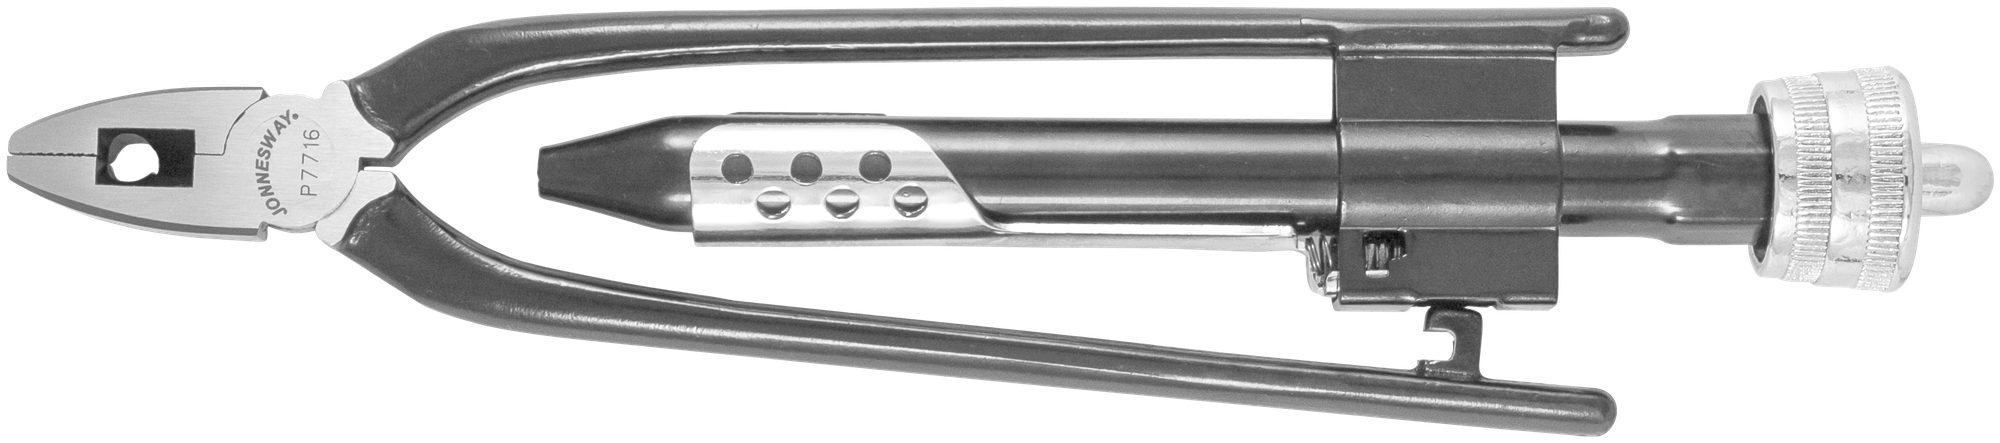 P7716 Плоскогубцы для скручивания проволоки (твистеры) 160 мм JONNESWAY